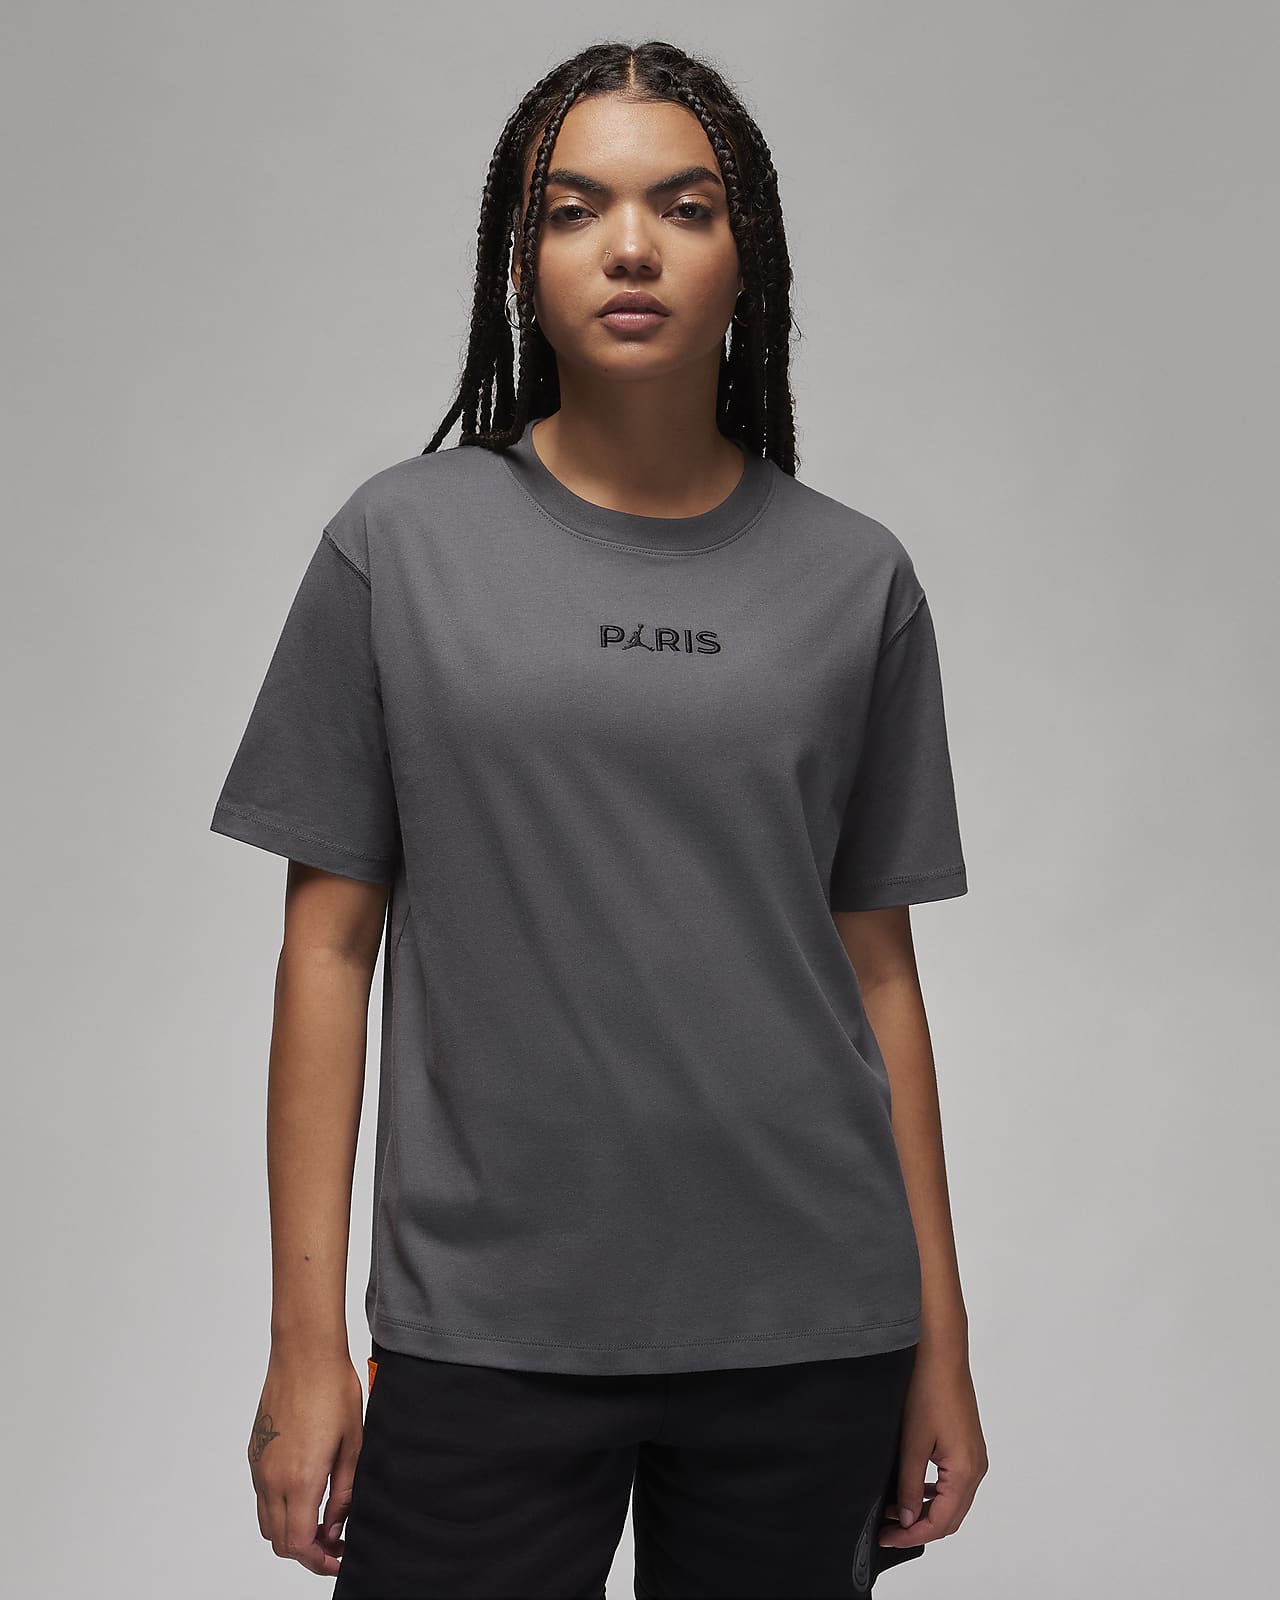 París Saint-Germain Camiseta - Mujer